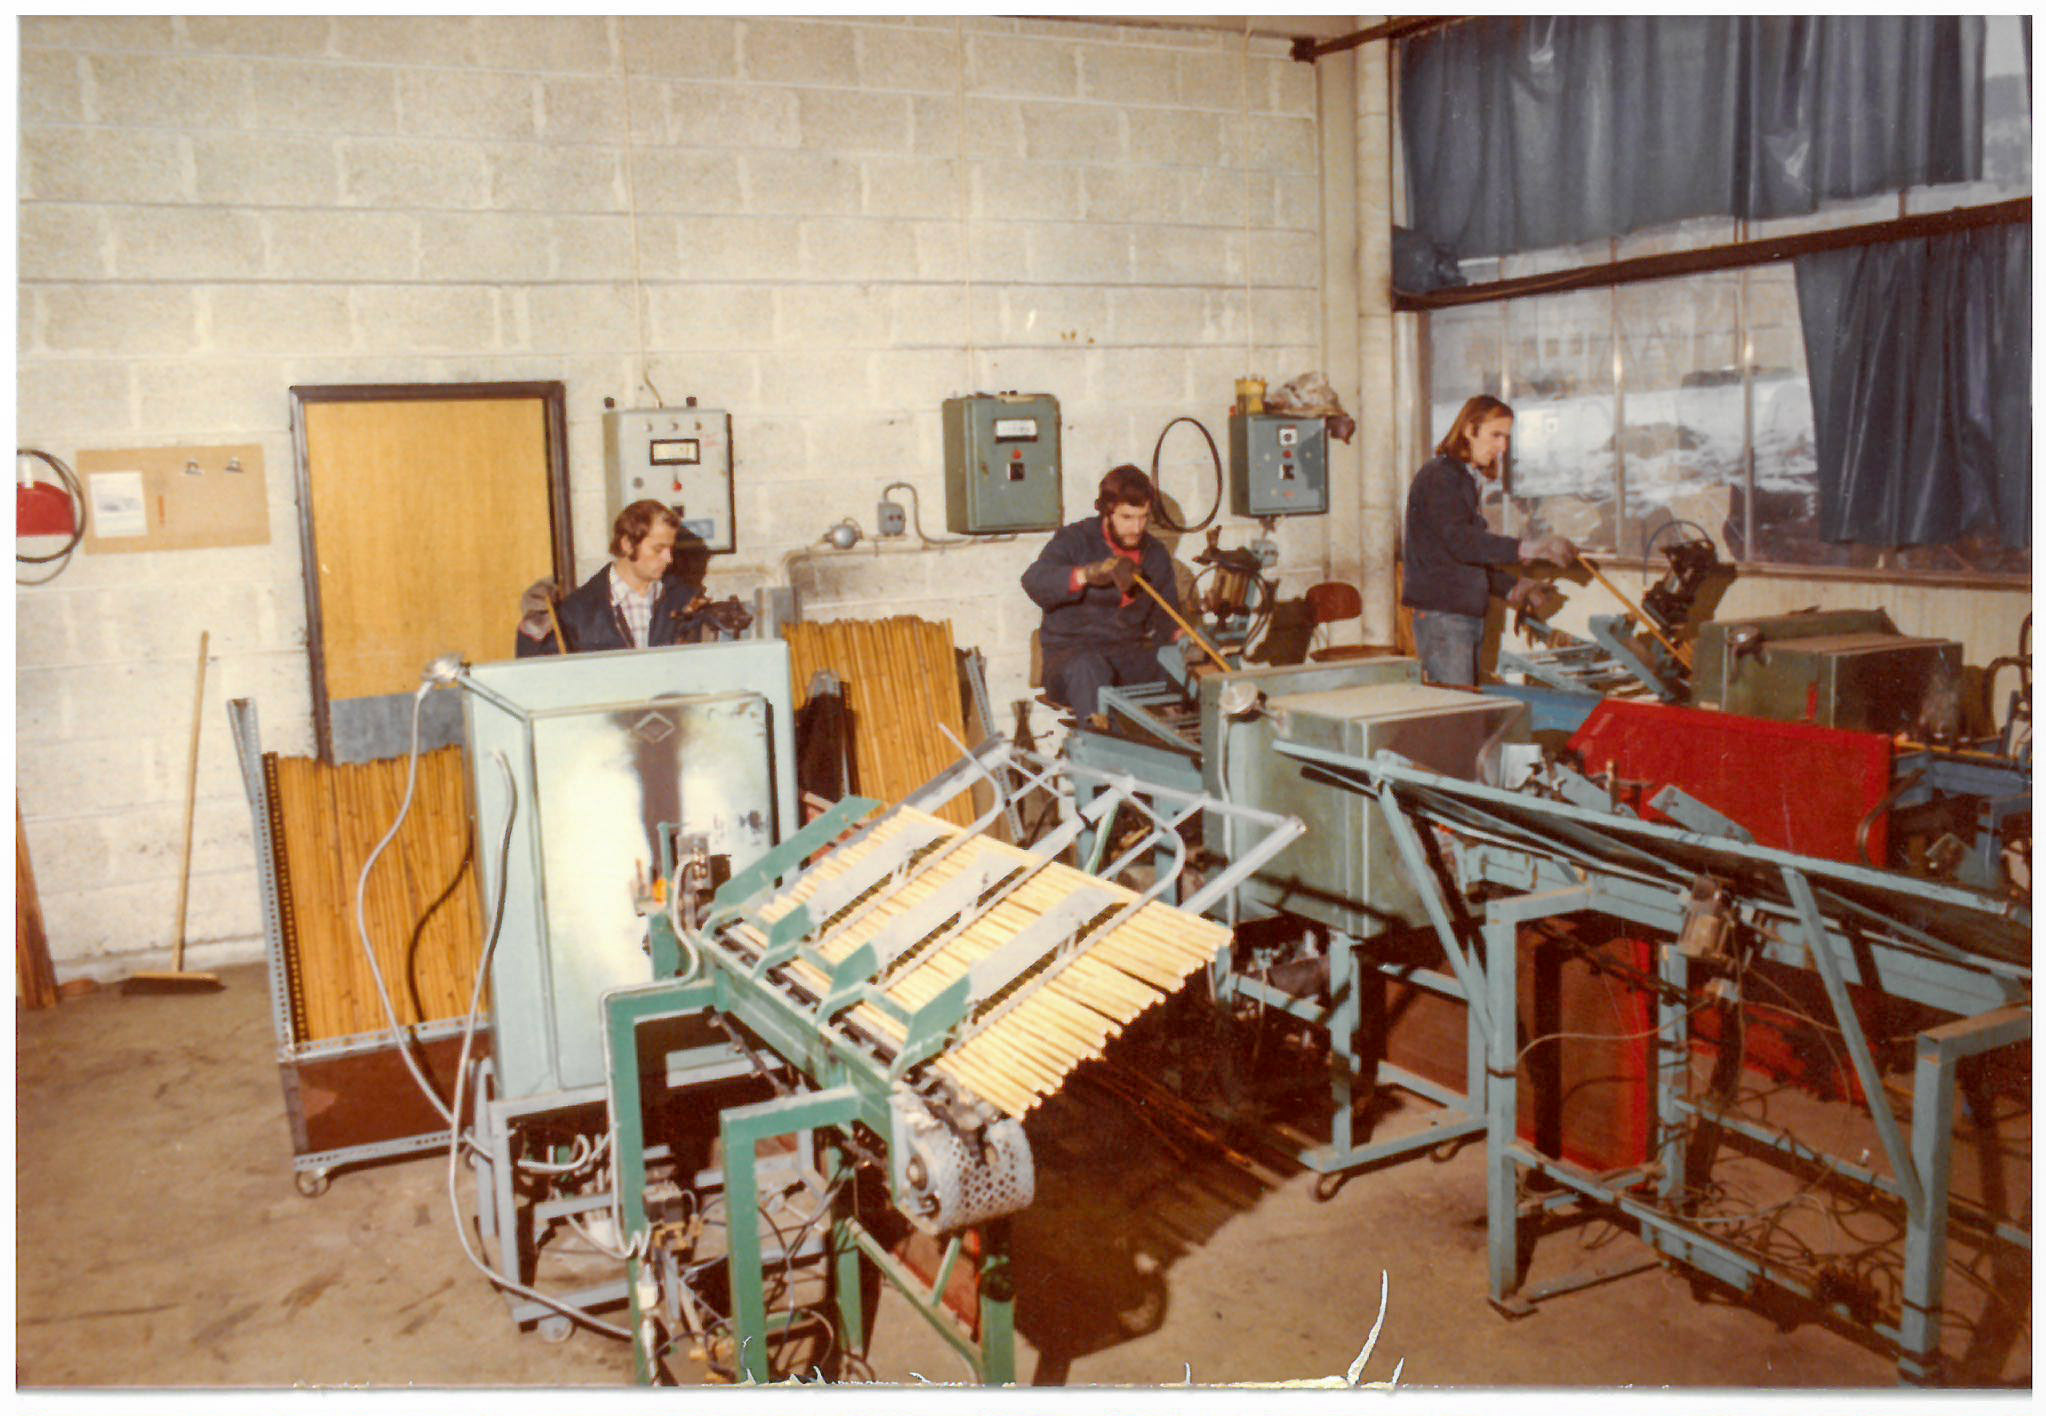 Stavproduktion i Swix/Liljedahls stavfabrik i Lillehammer 1976. Året efter tillverkades 900 000 par skidstavar av tonkinbambu. Här syns hur bambun matades in i ugnarna från baksidan.